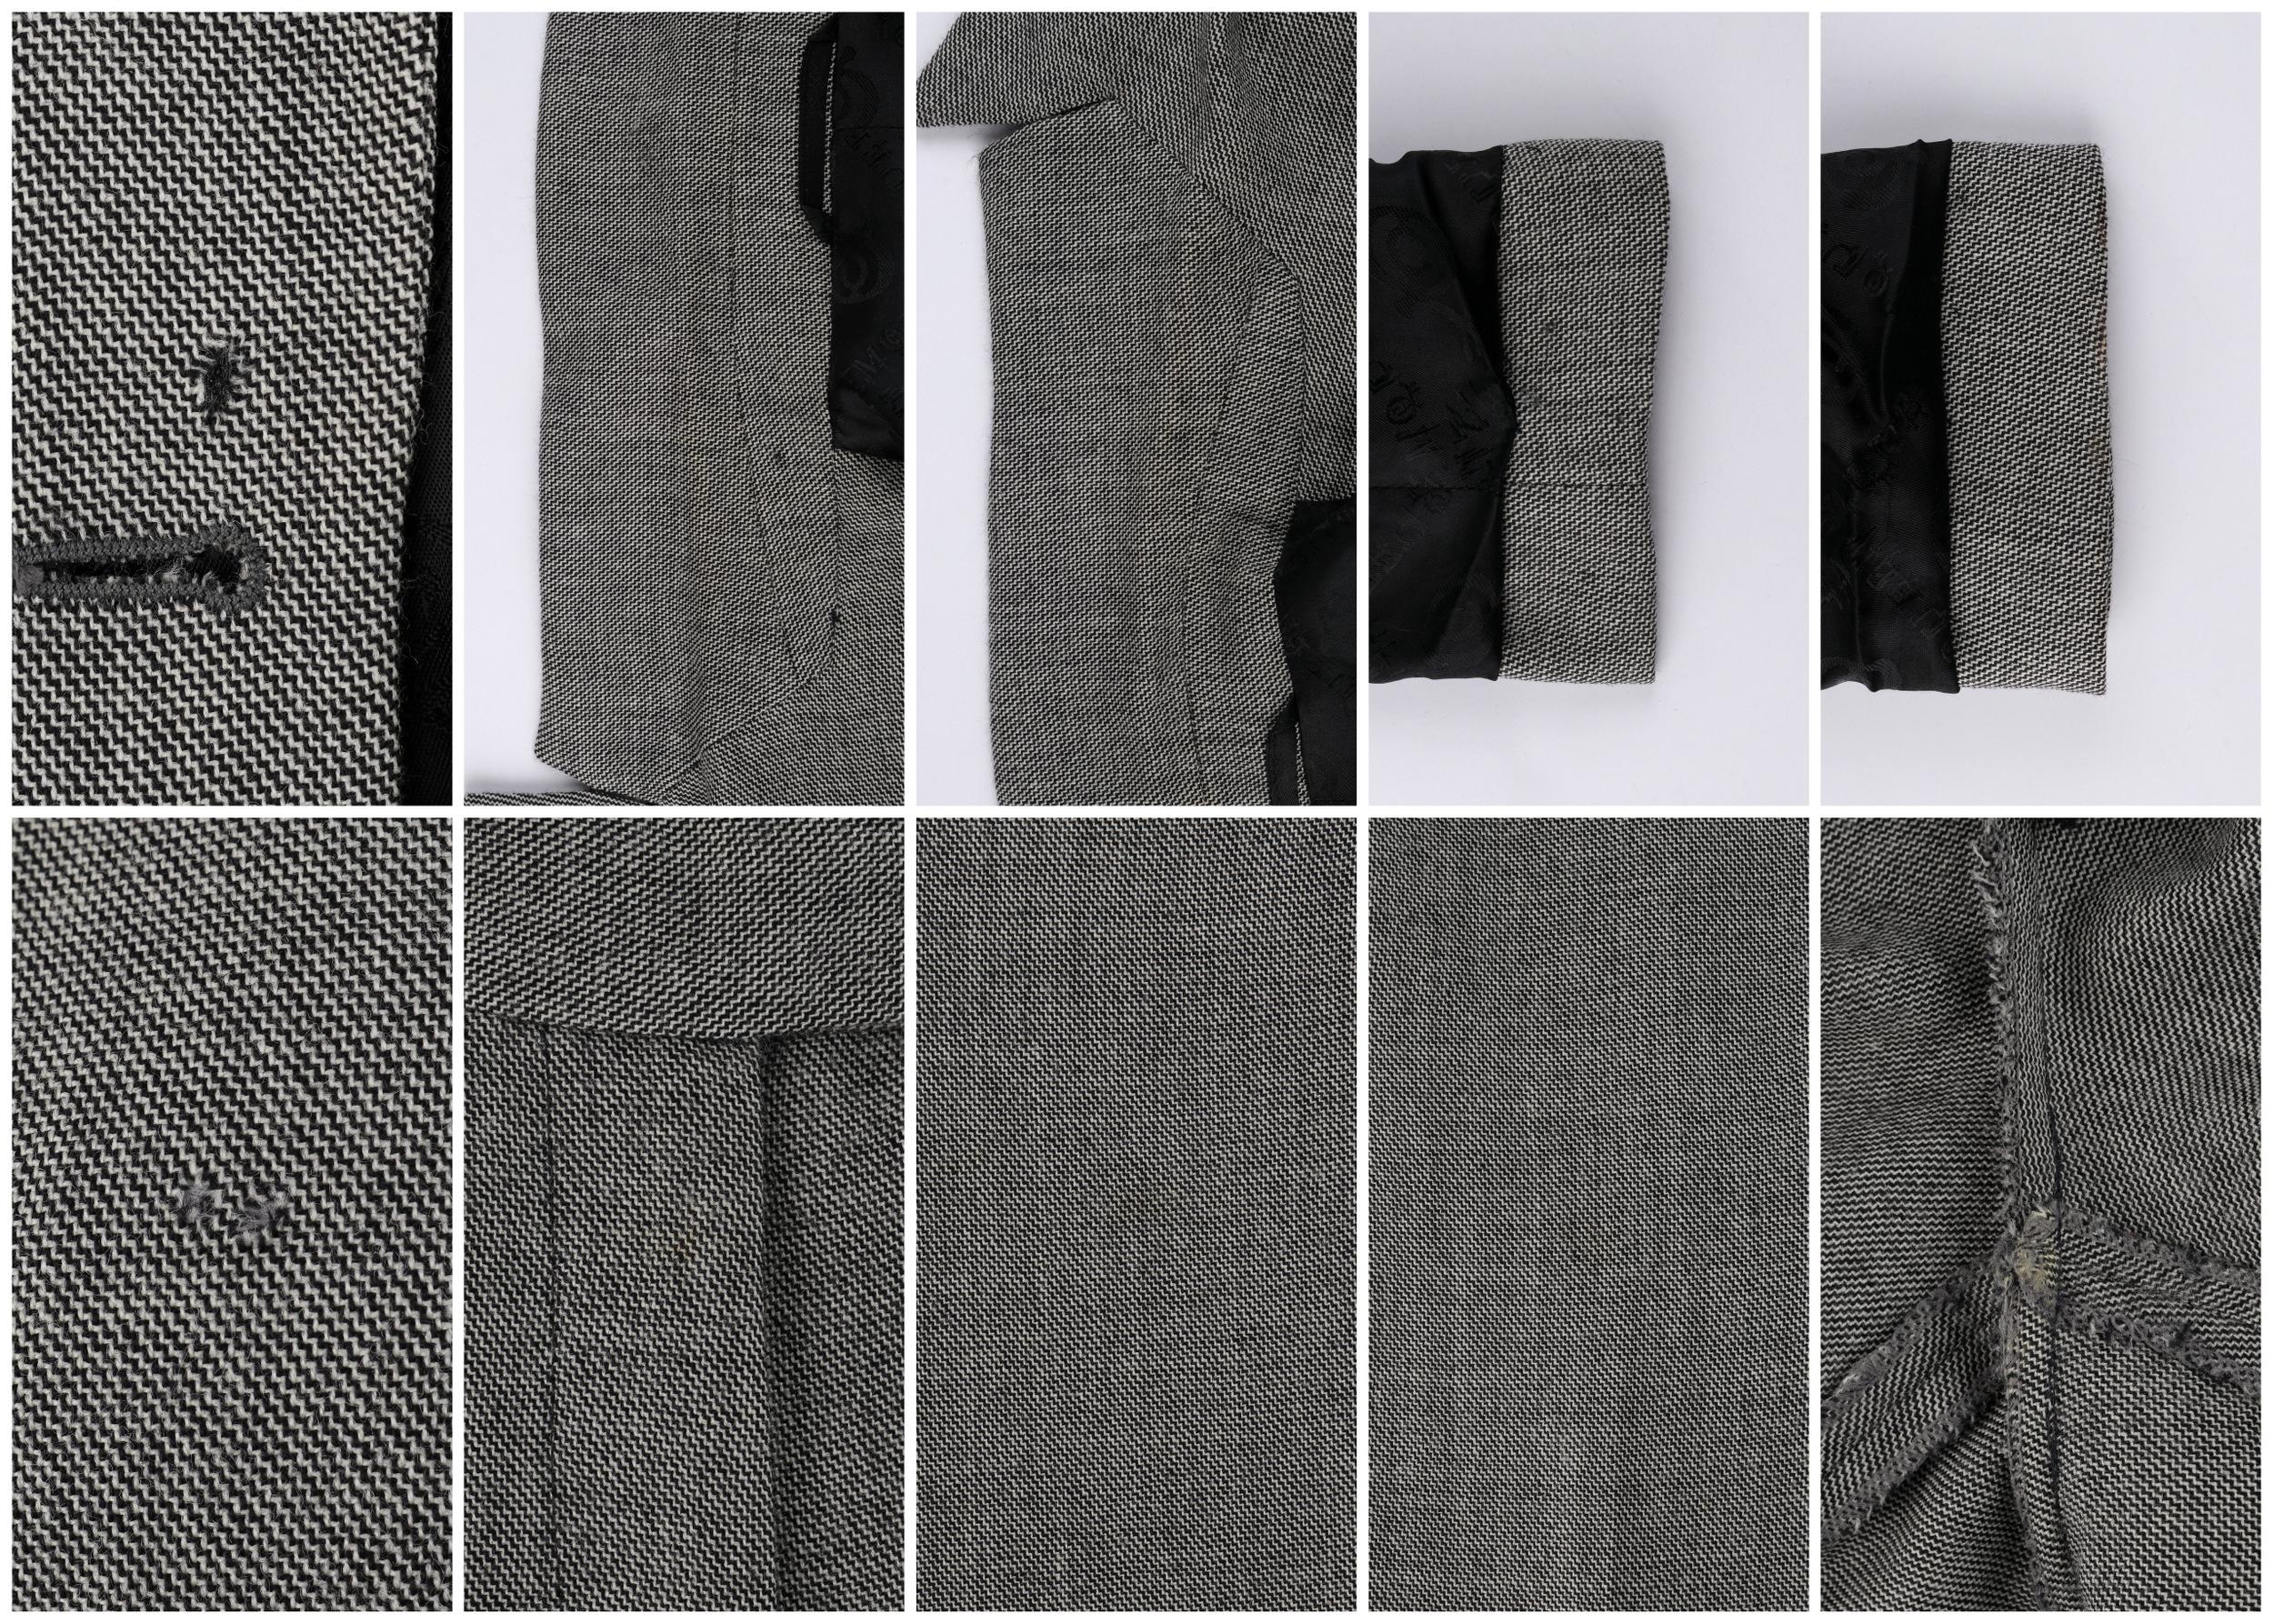 ALEXANDER McQUEEN A/W 1998 “Joan” Gray Blazer Jacket Wide Leg Trouser Pant Suit For Sale 6